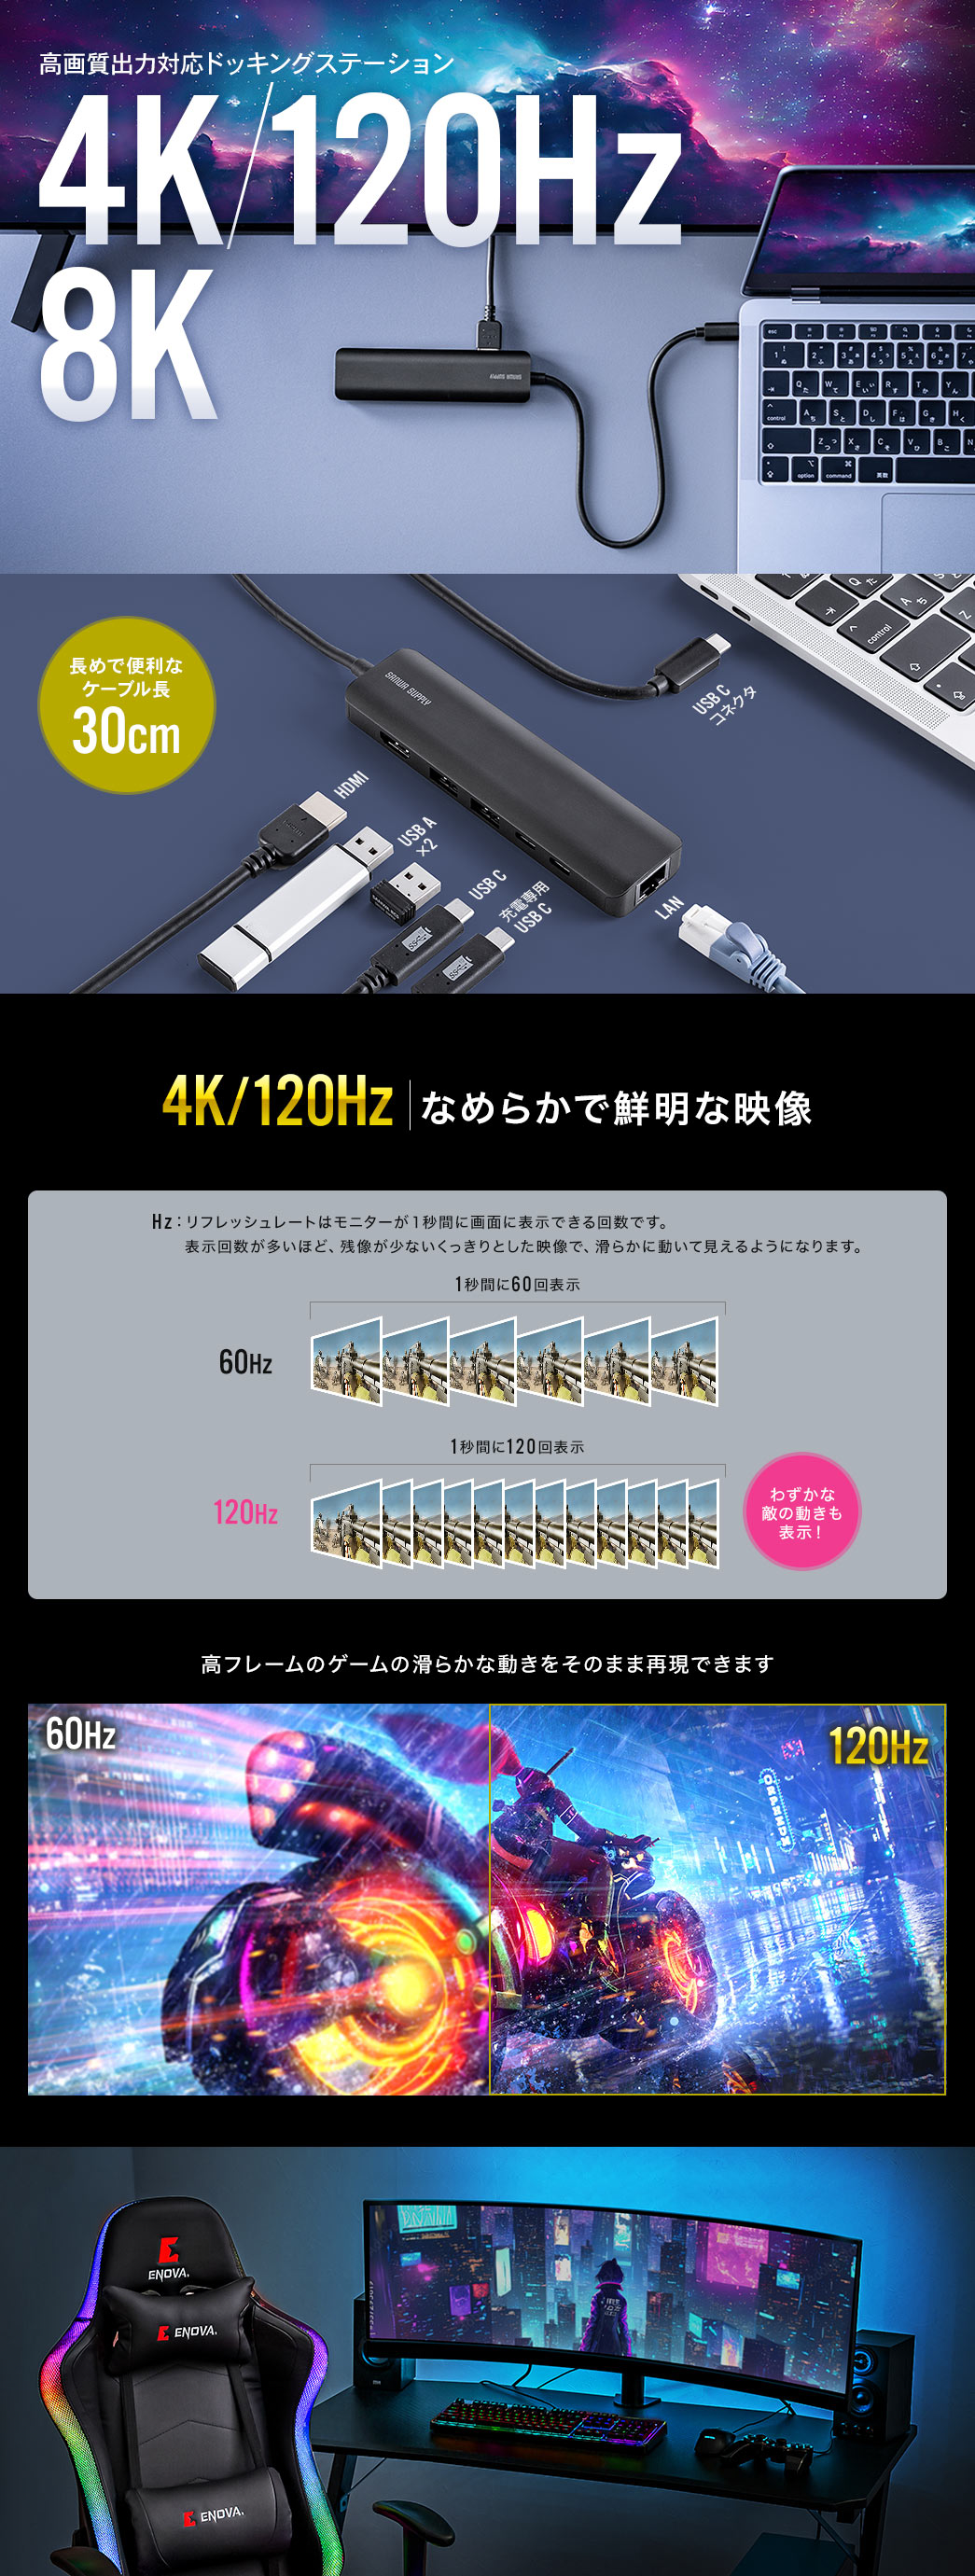 8K 4K120Hz 高出力対応ドッキングステーション 長めで便利なケーブル長30cm 4K/120Hz なめらかで鮮明な映像